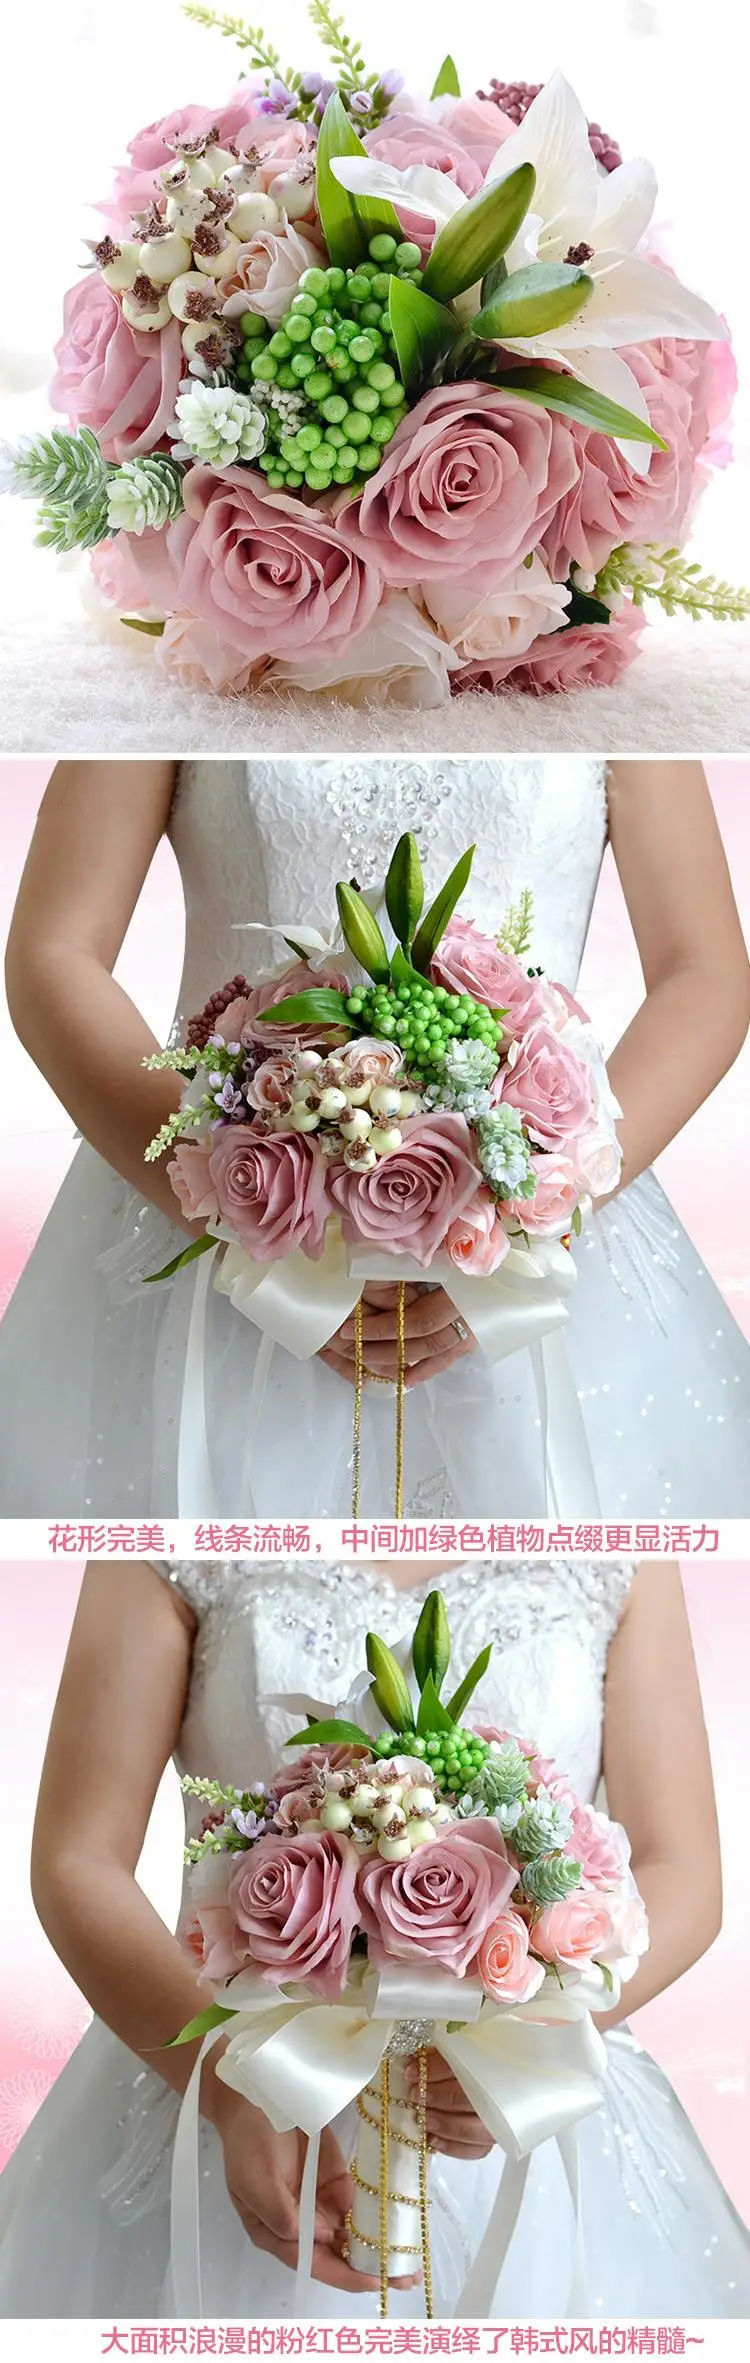 Розовый персик искусственная ткань розетка цветы Свадебные букеты 2016 романтическая свадебная брошь ramo de novia Свадебные аксессуары